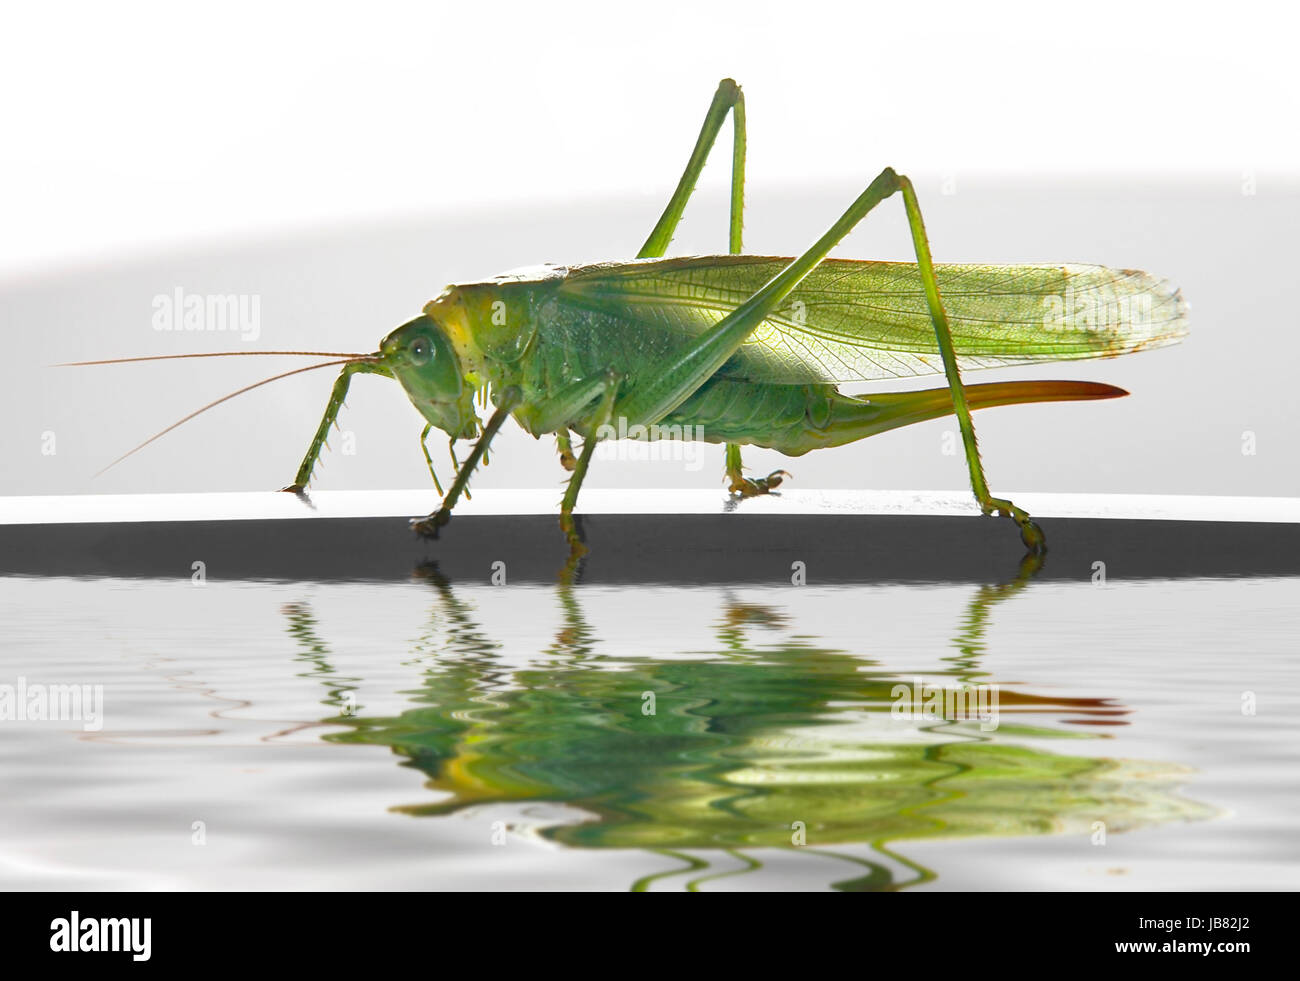 große grüne weibliche Heuschrecke zu Fuß auf einem dünnen horizontalen Stock auf spiegelnde Wasseroberfläche Stockfoto